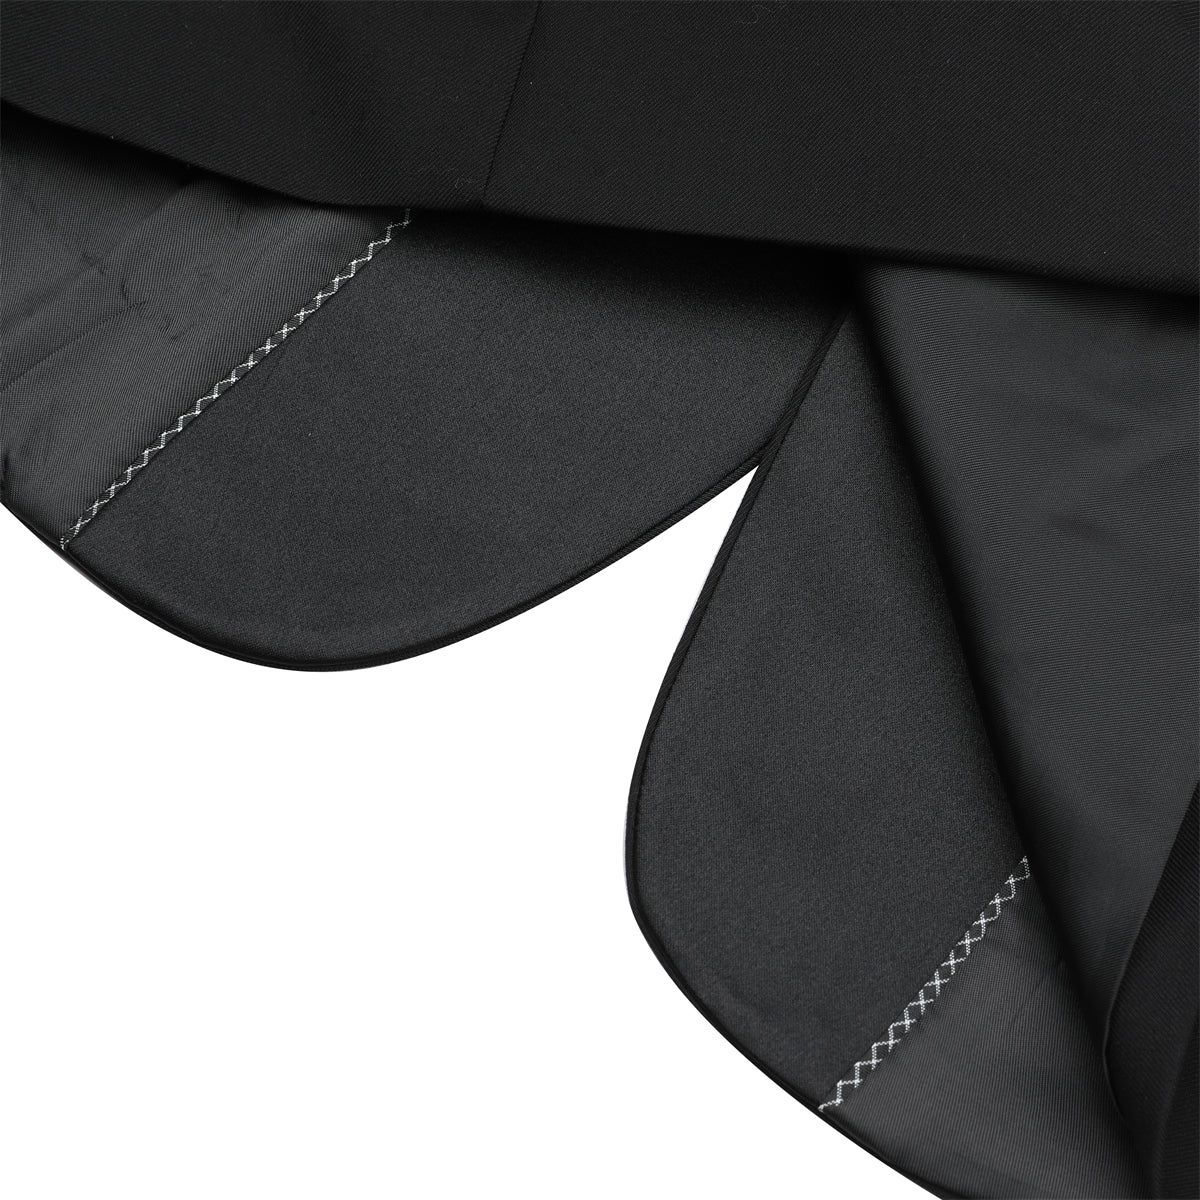 Slim Fit One Button Casual Black 3-Piece Suit